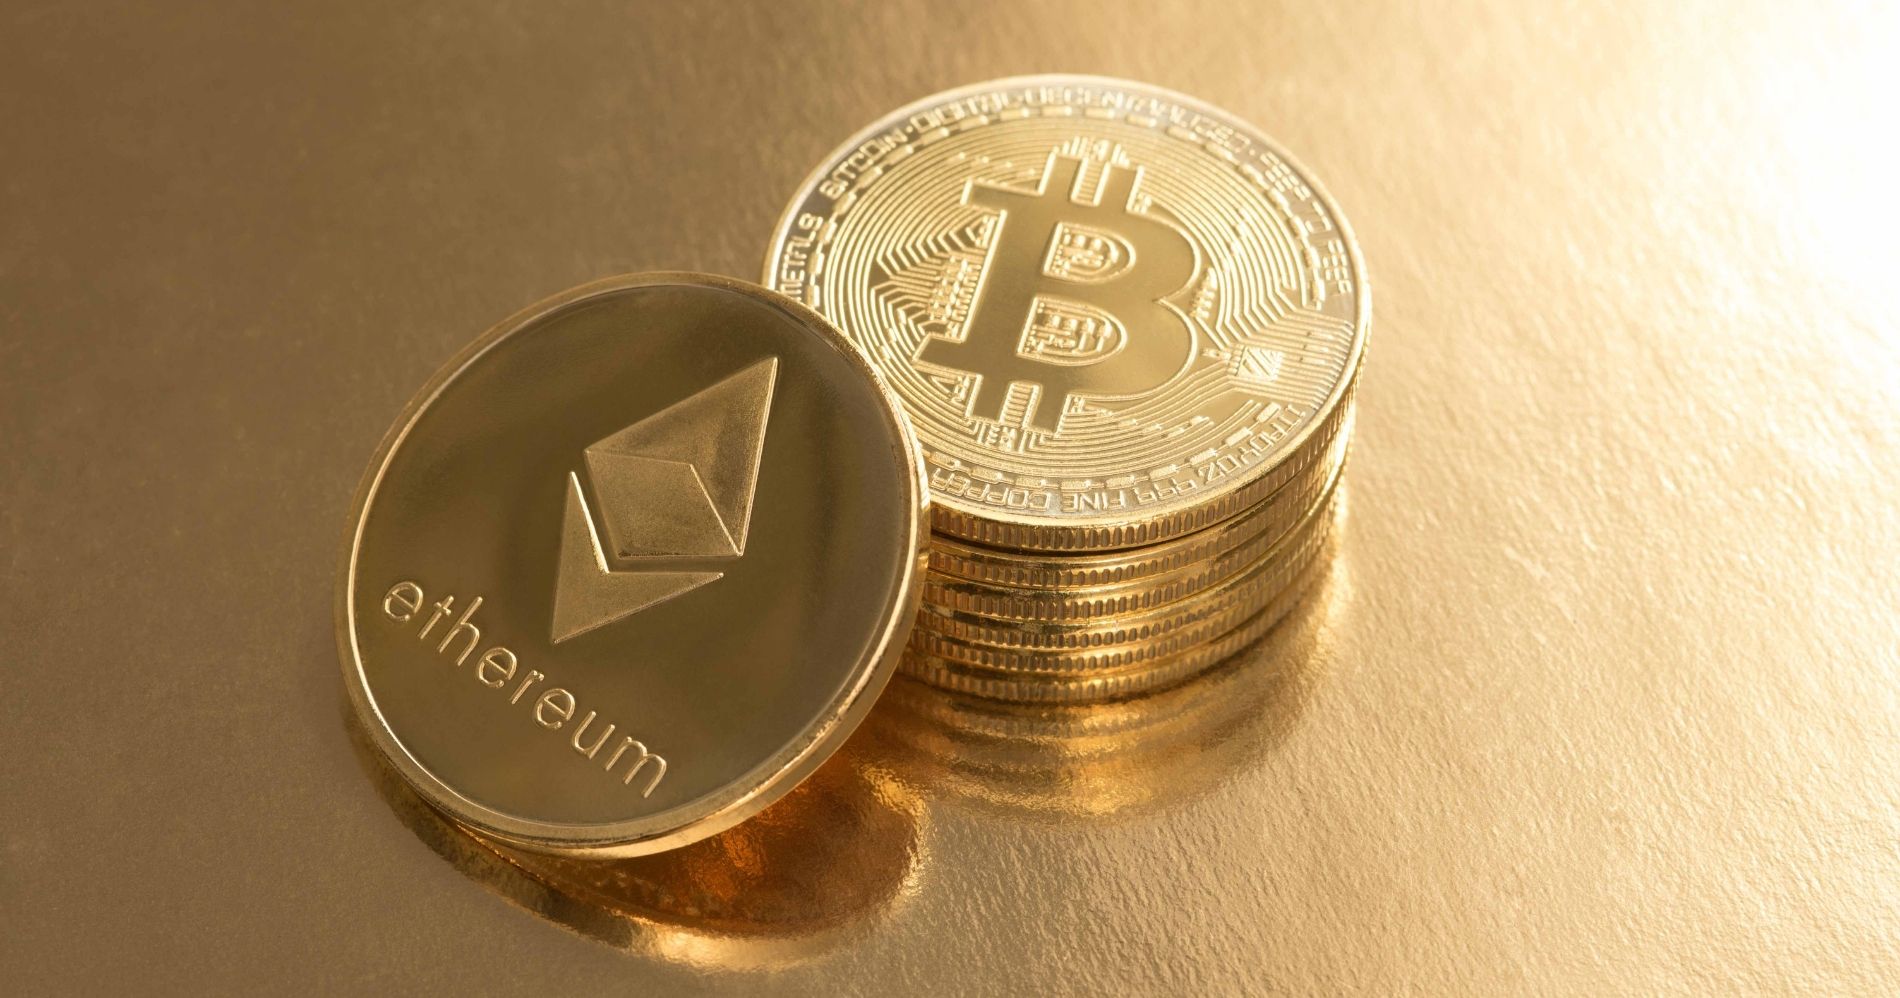 Bingung Pilih Bitcoin atau Ethereum sebagai Investasi? Ini yang Perlu  Dipertimbangkan - Bisnis Muda